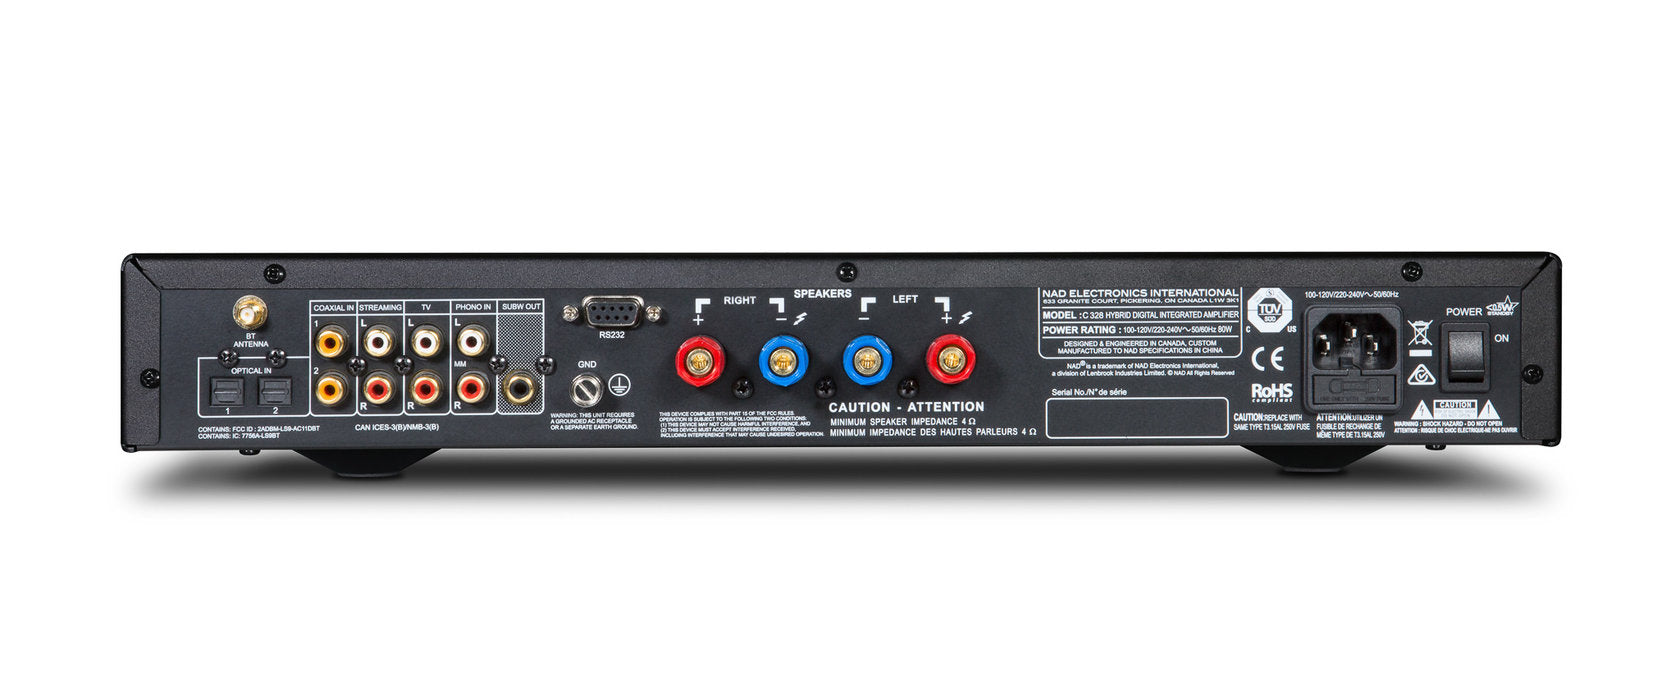 NAD C328 Hybrid Digital DAC amplifier, customer return